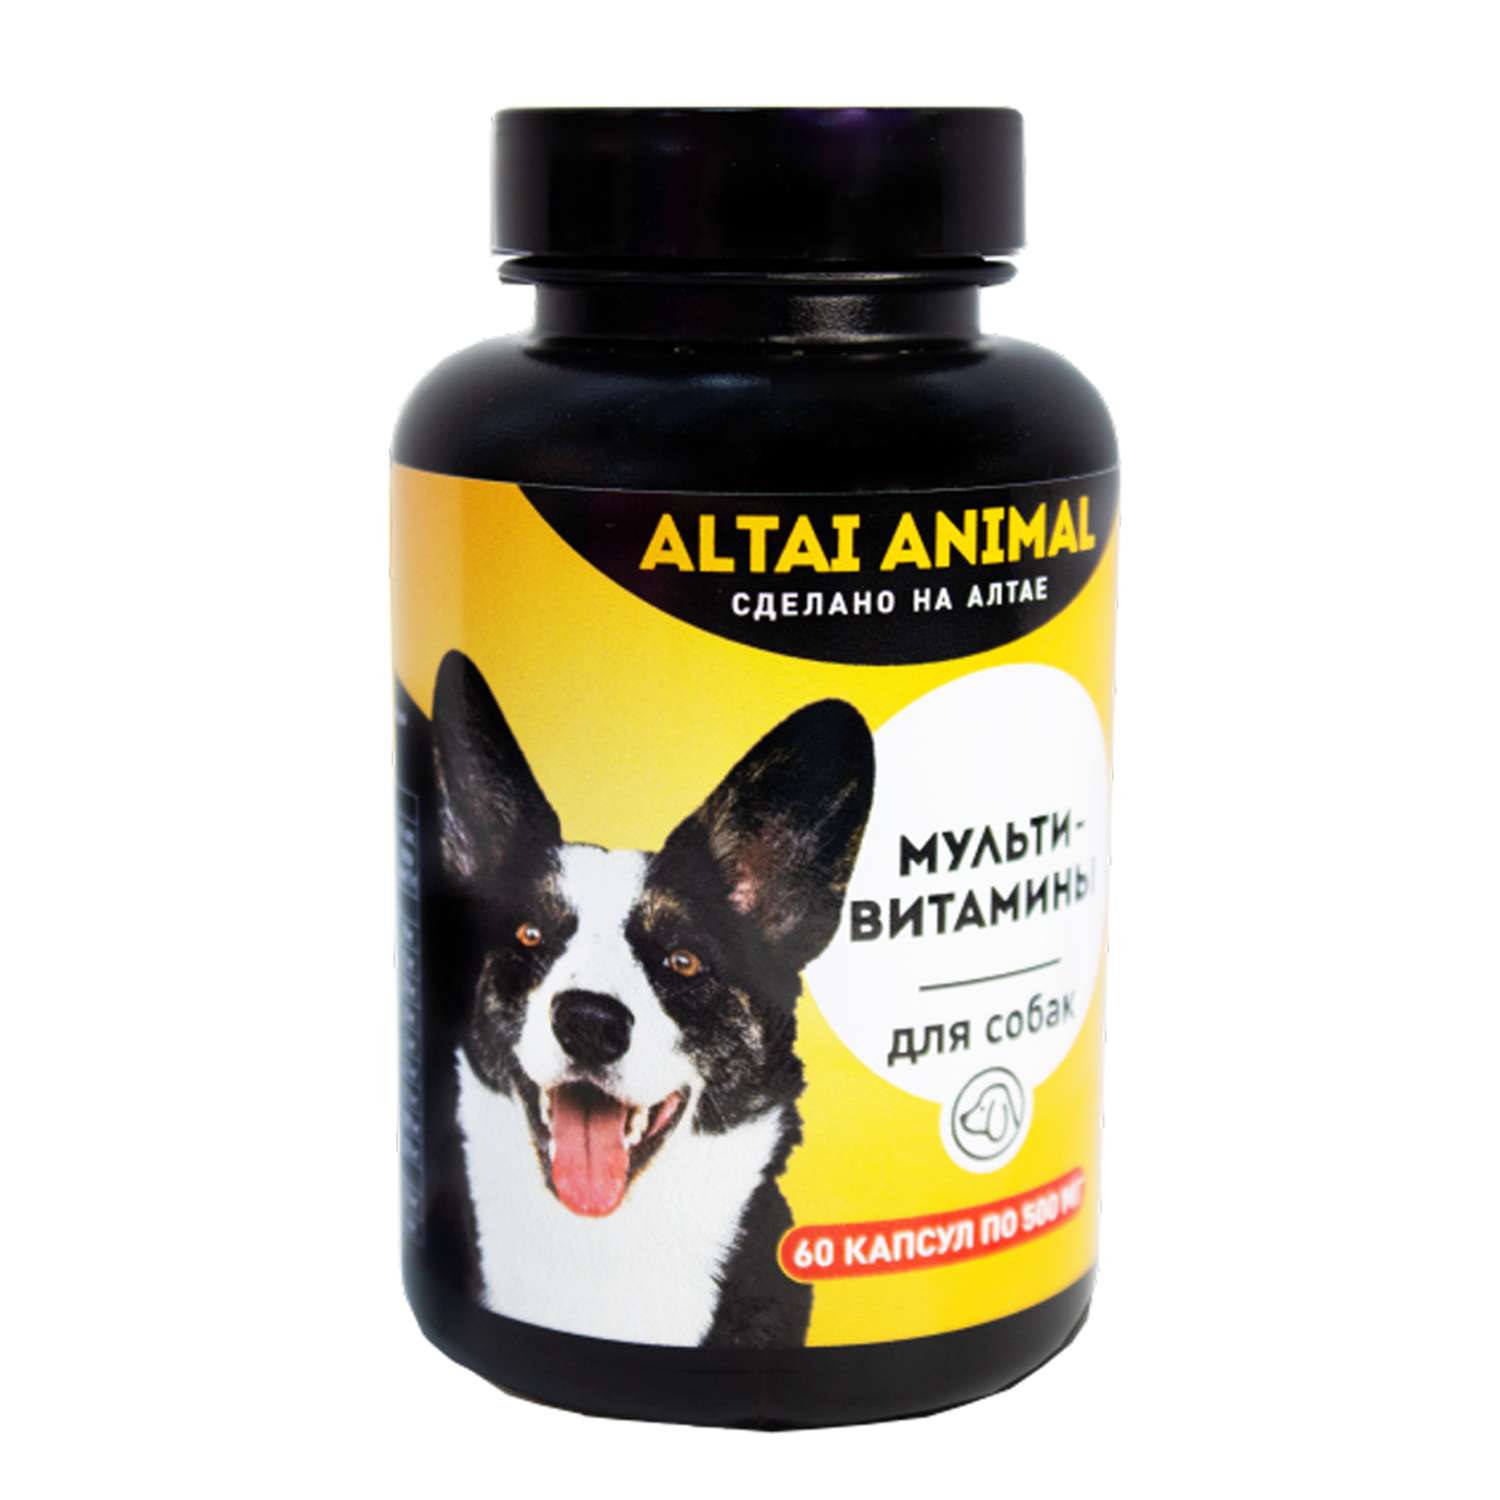 Витаминный комплекс ALTAI ANIMAL для собак 11 мультивитаминов цинк кальций магний - фото 1